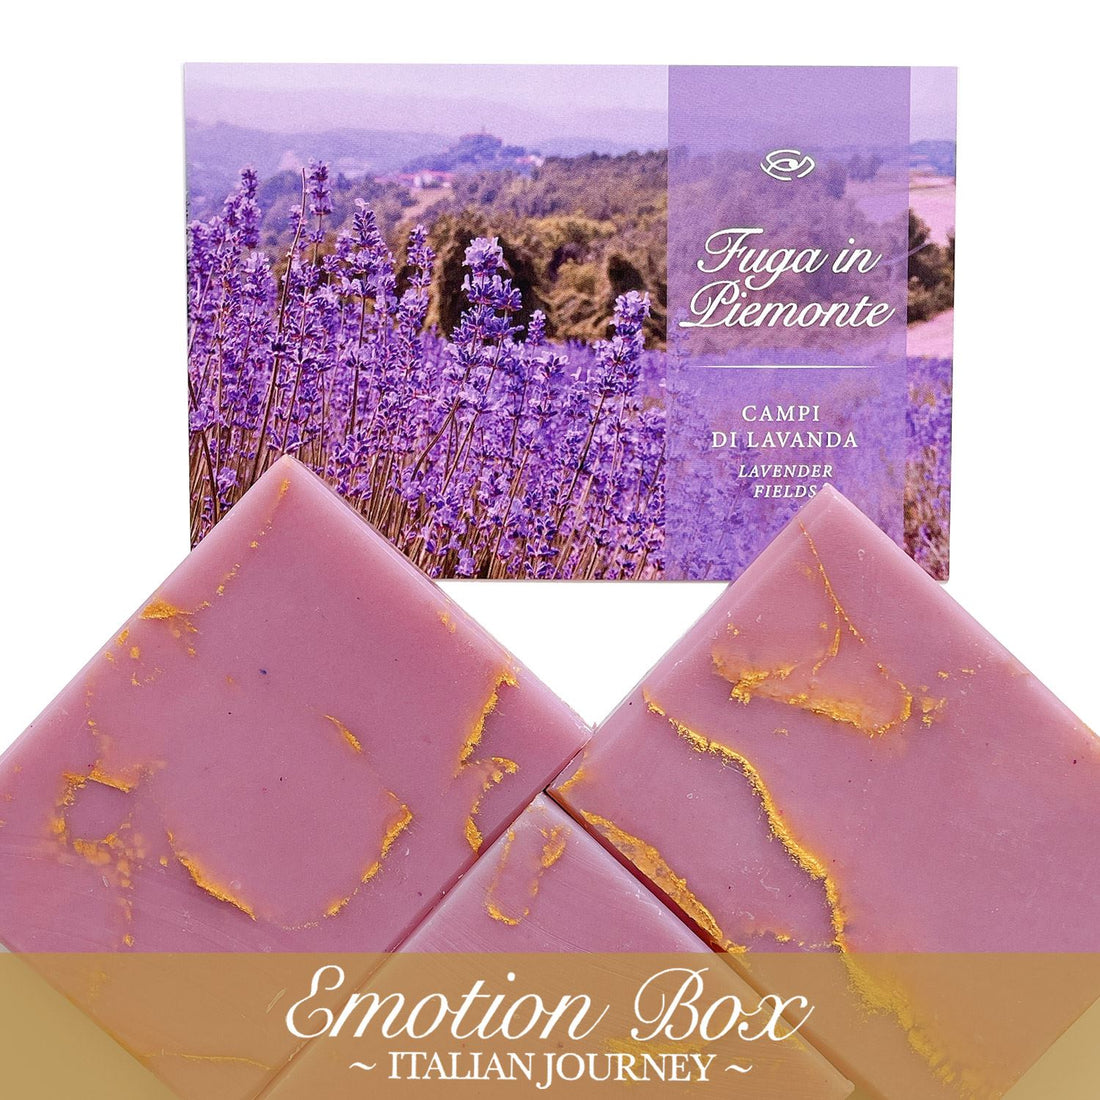 Emotion Box - ESCAPE IN PIEDMONT (Lavender Fields) 2 SOAPS